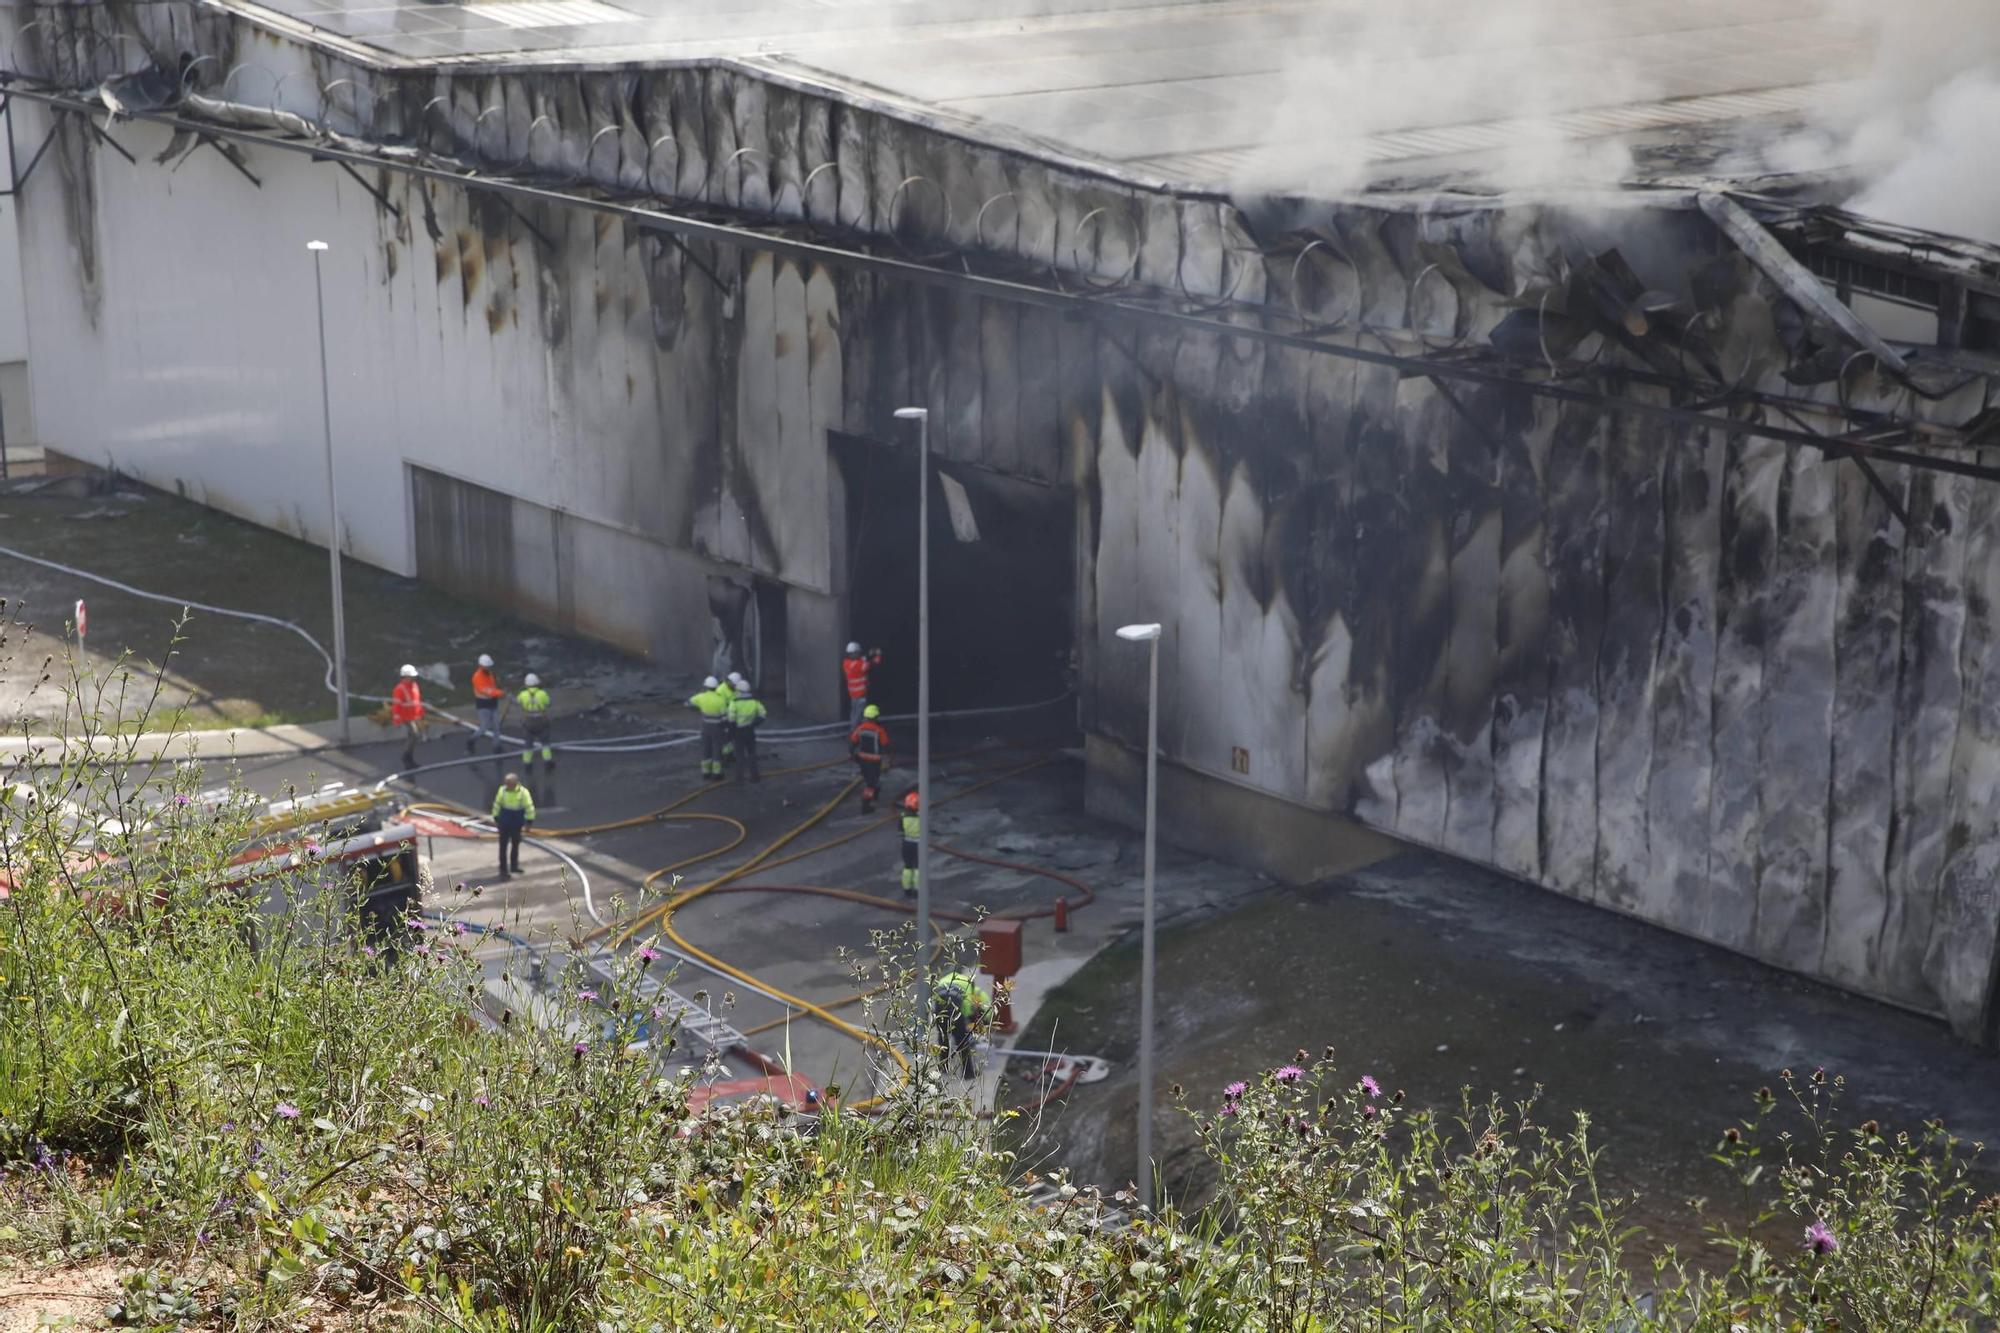 Así fue el espectacular incendio en una planta de Cogersa en Gijón (en imágenes)